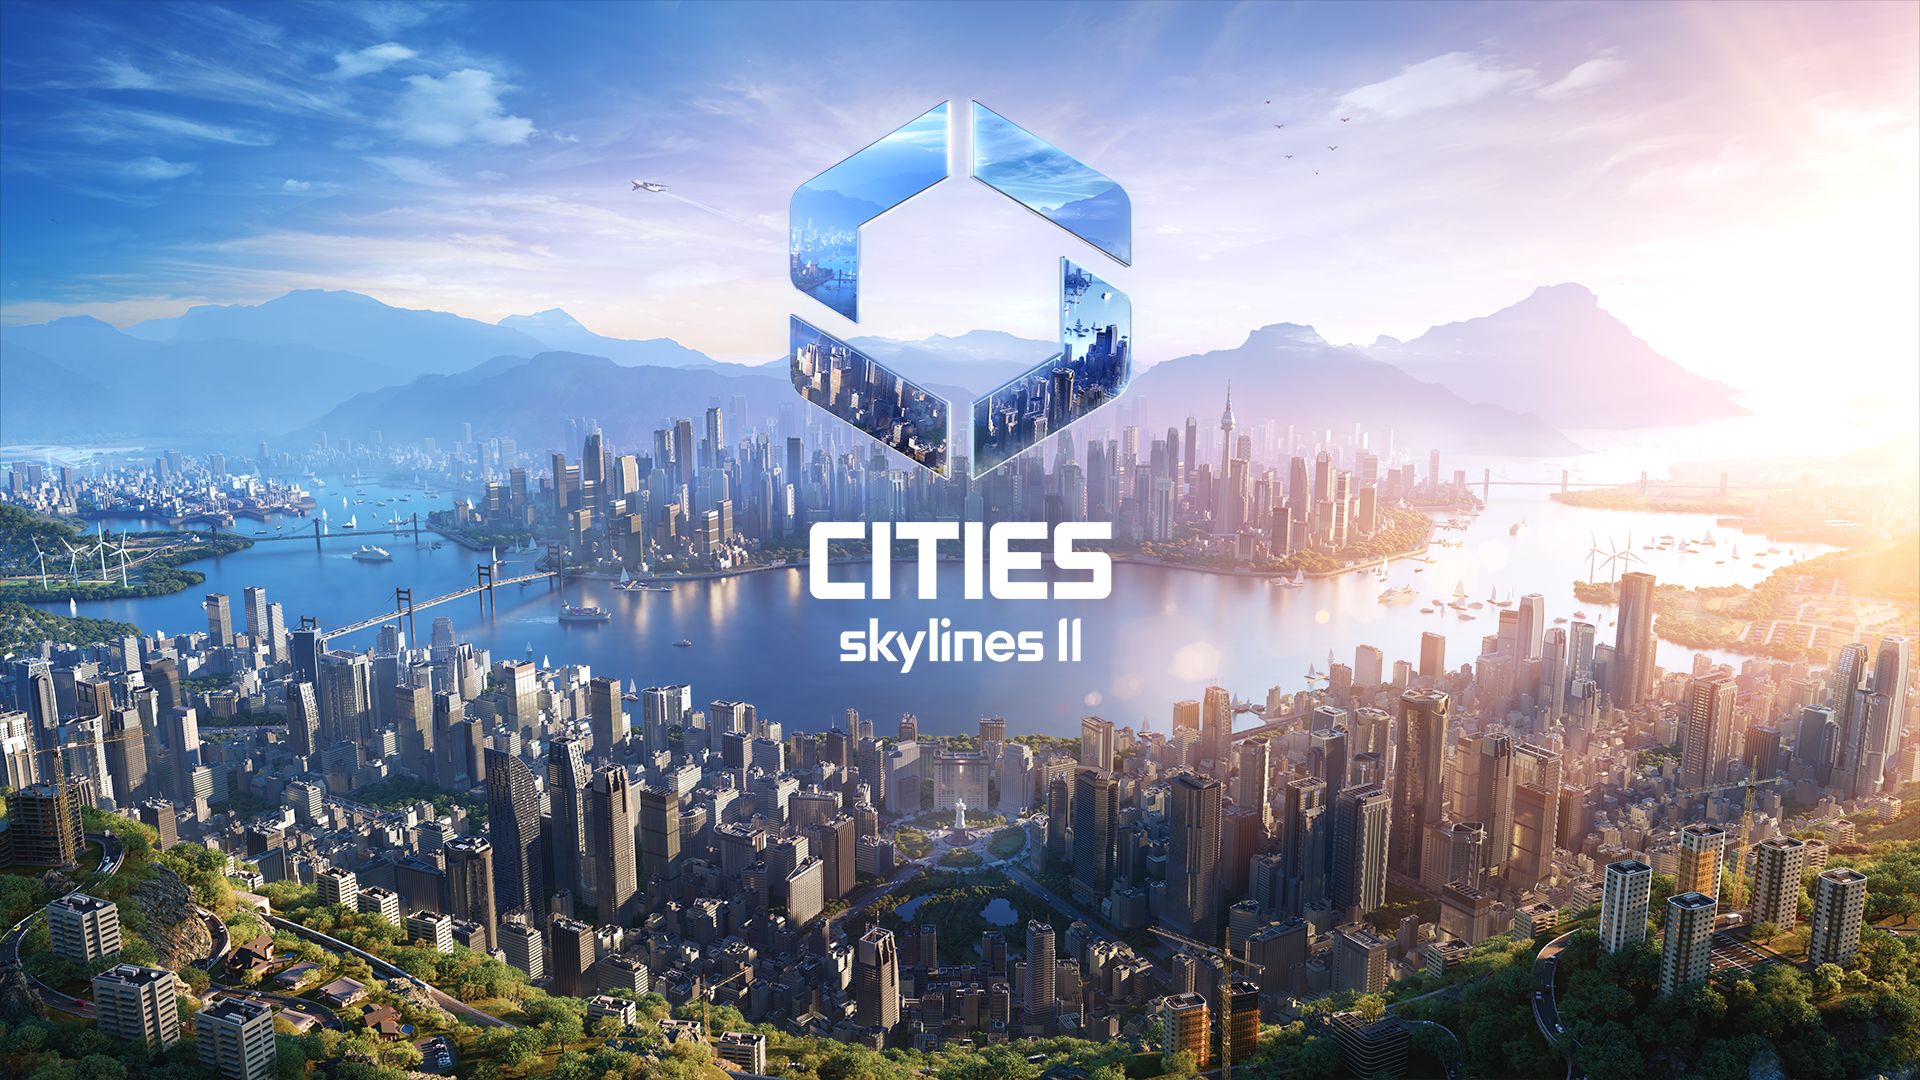 Cities: Skylines II: बिना किसी सीमा के विश्व-निर्माण प्रदान करता है।